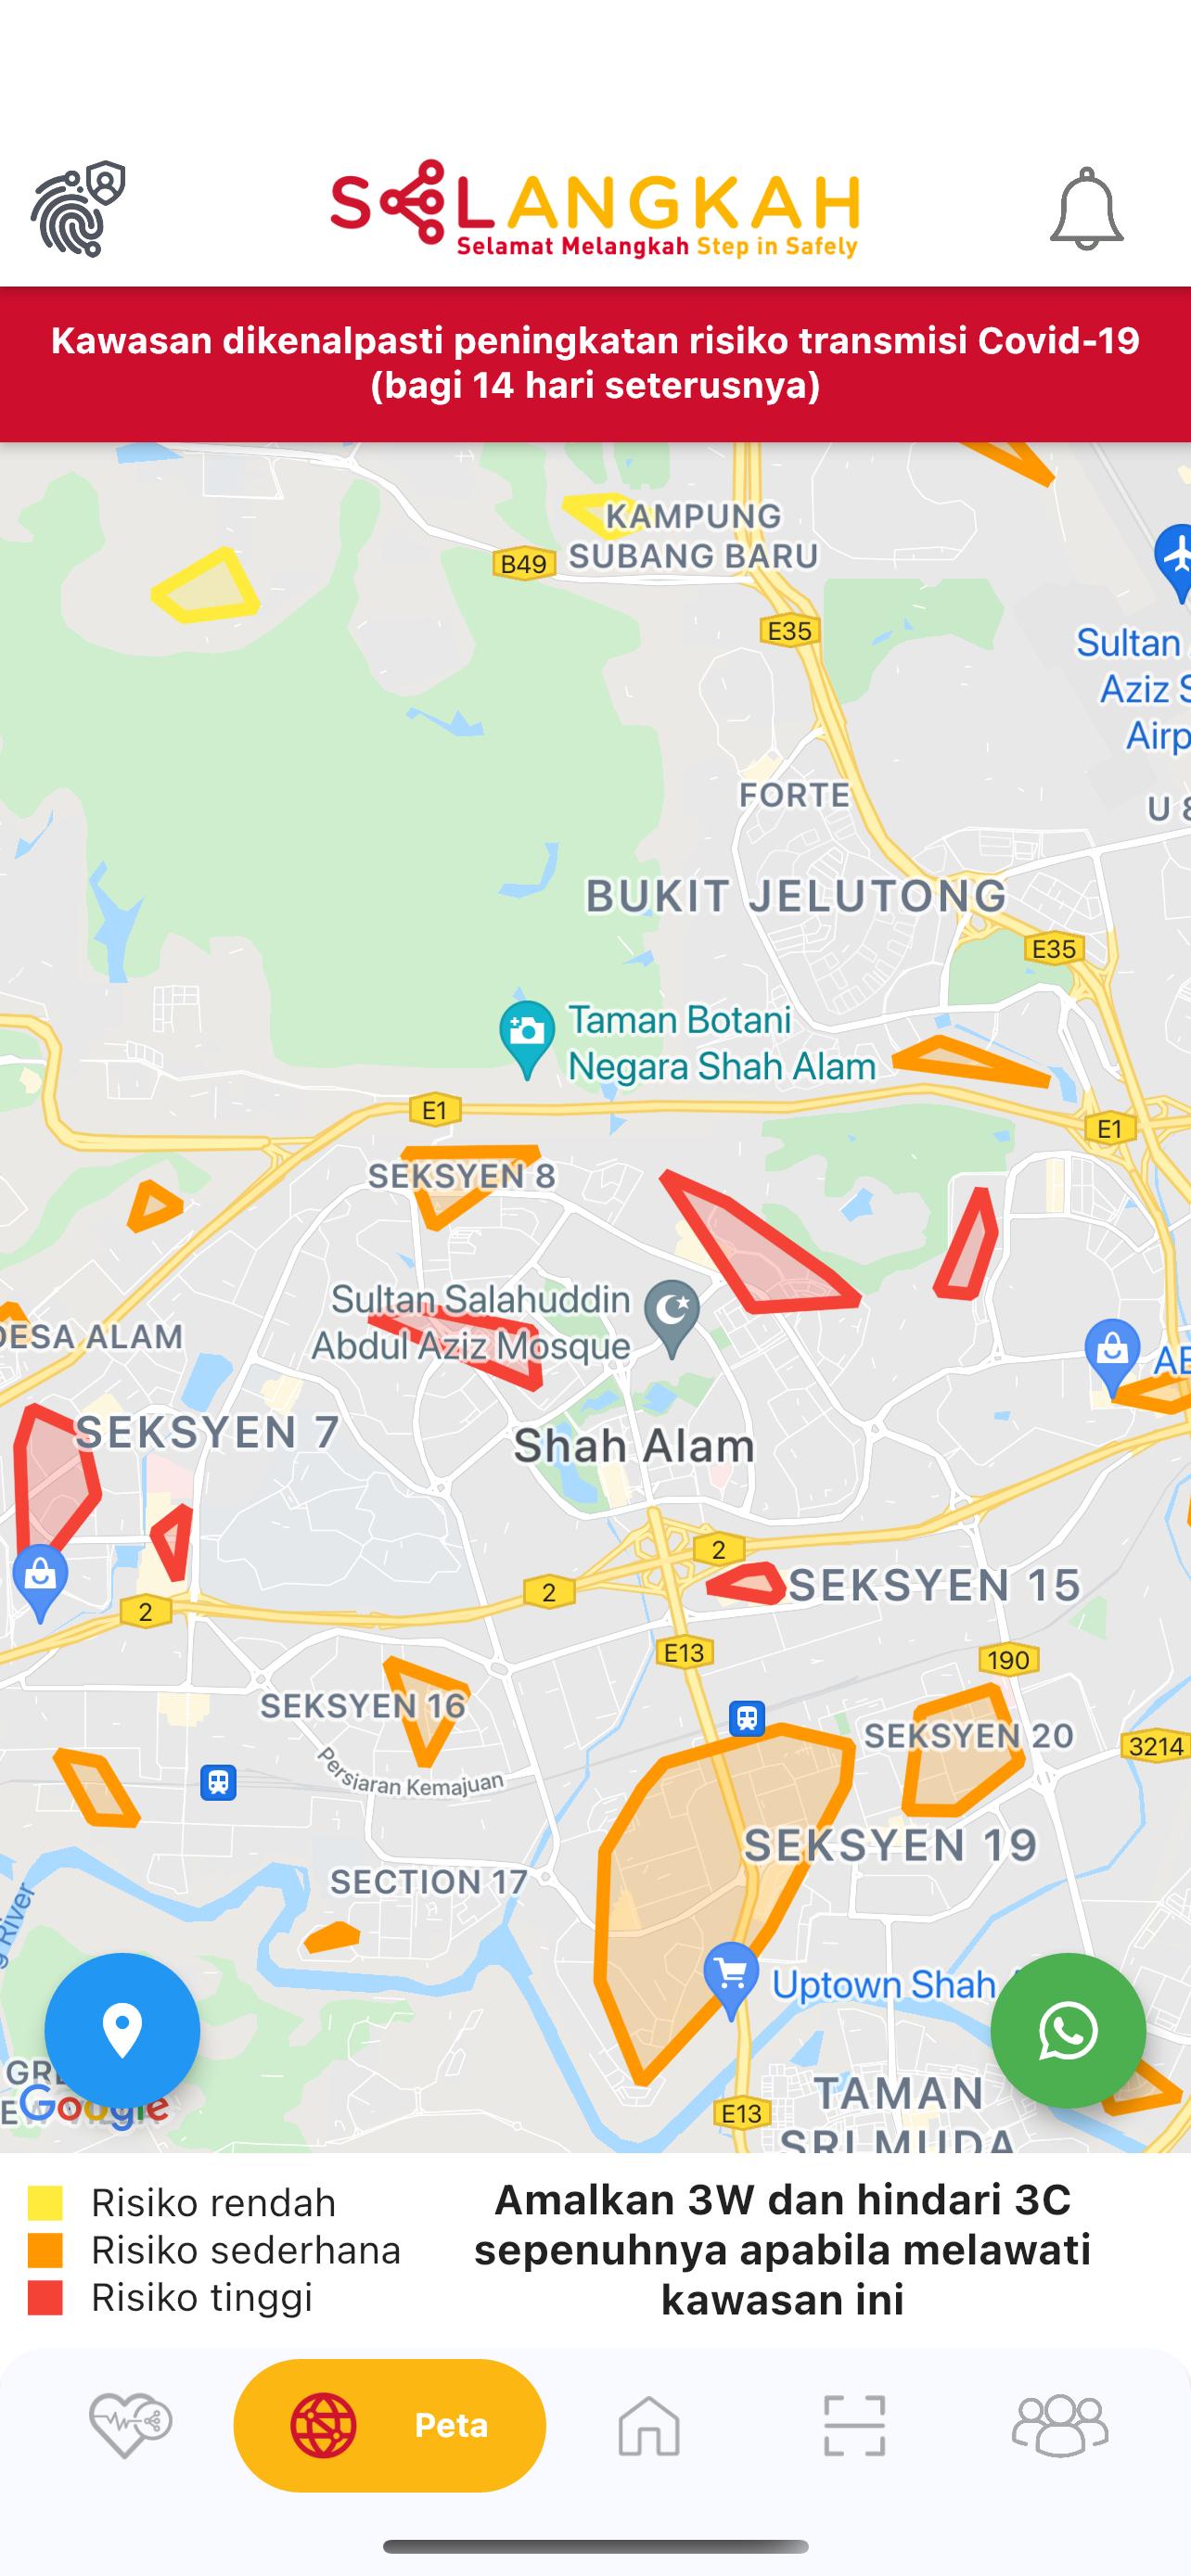 Login selangkah selangor Selangor's SELangkah